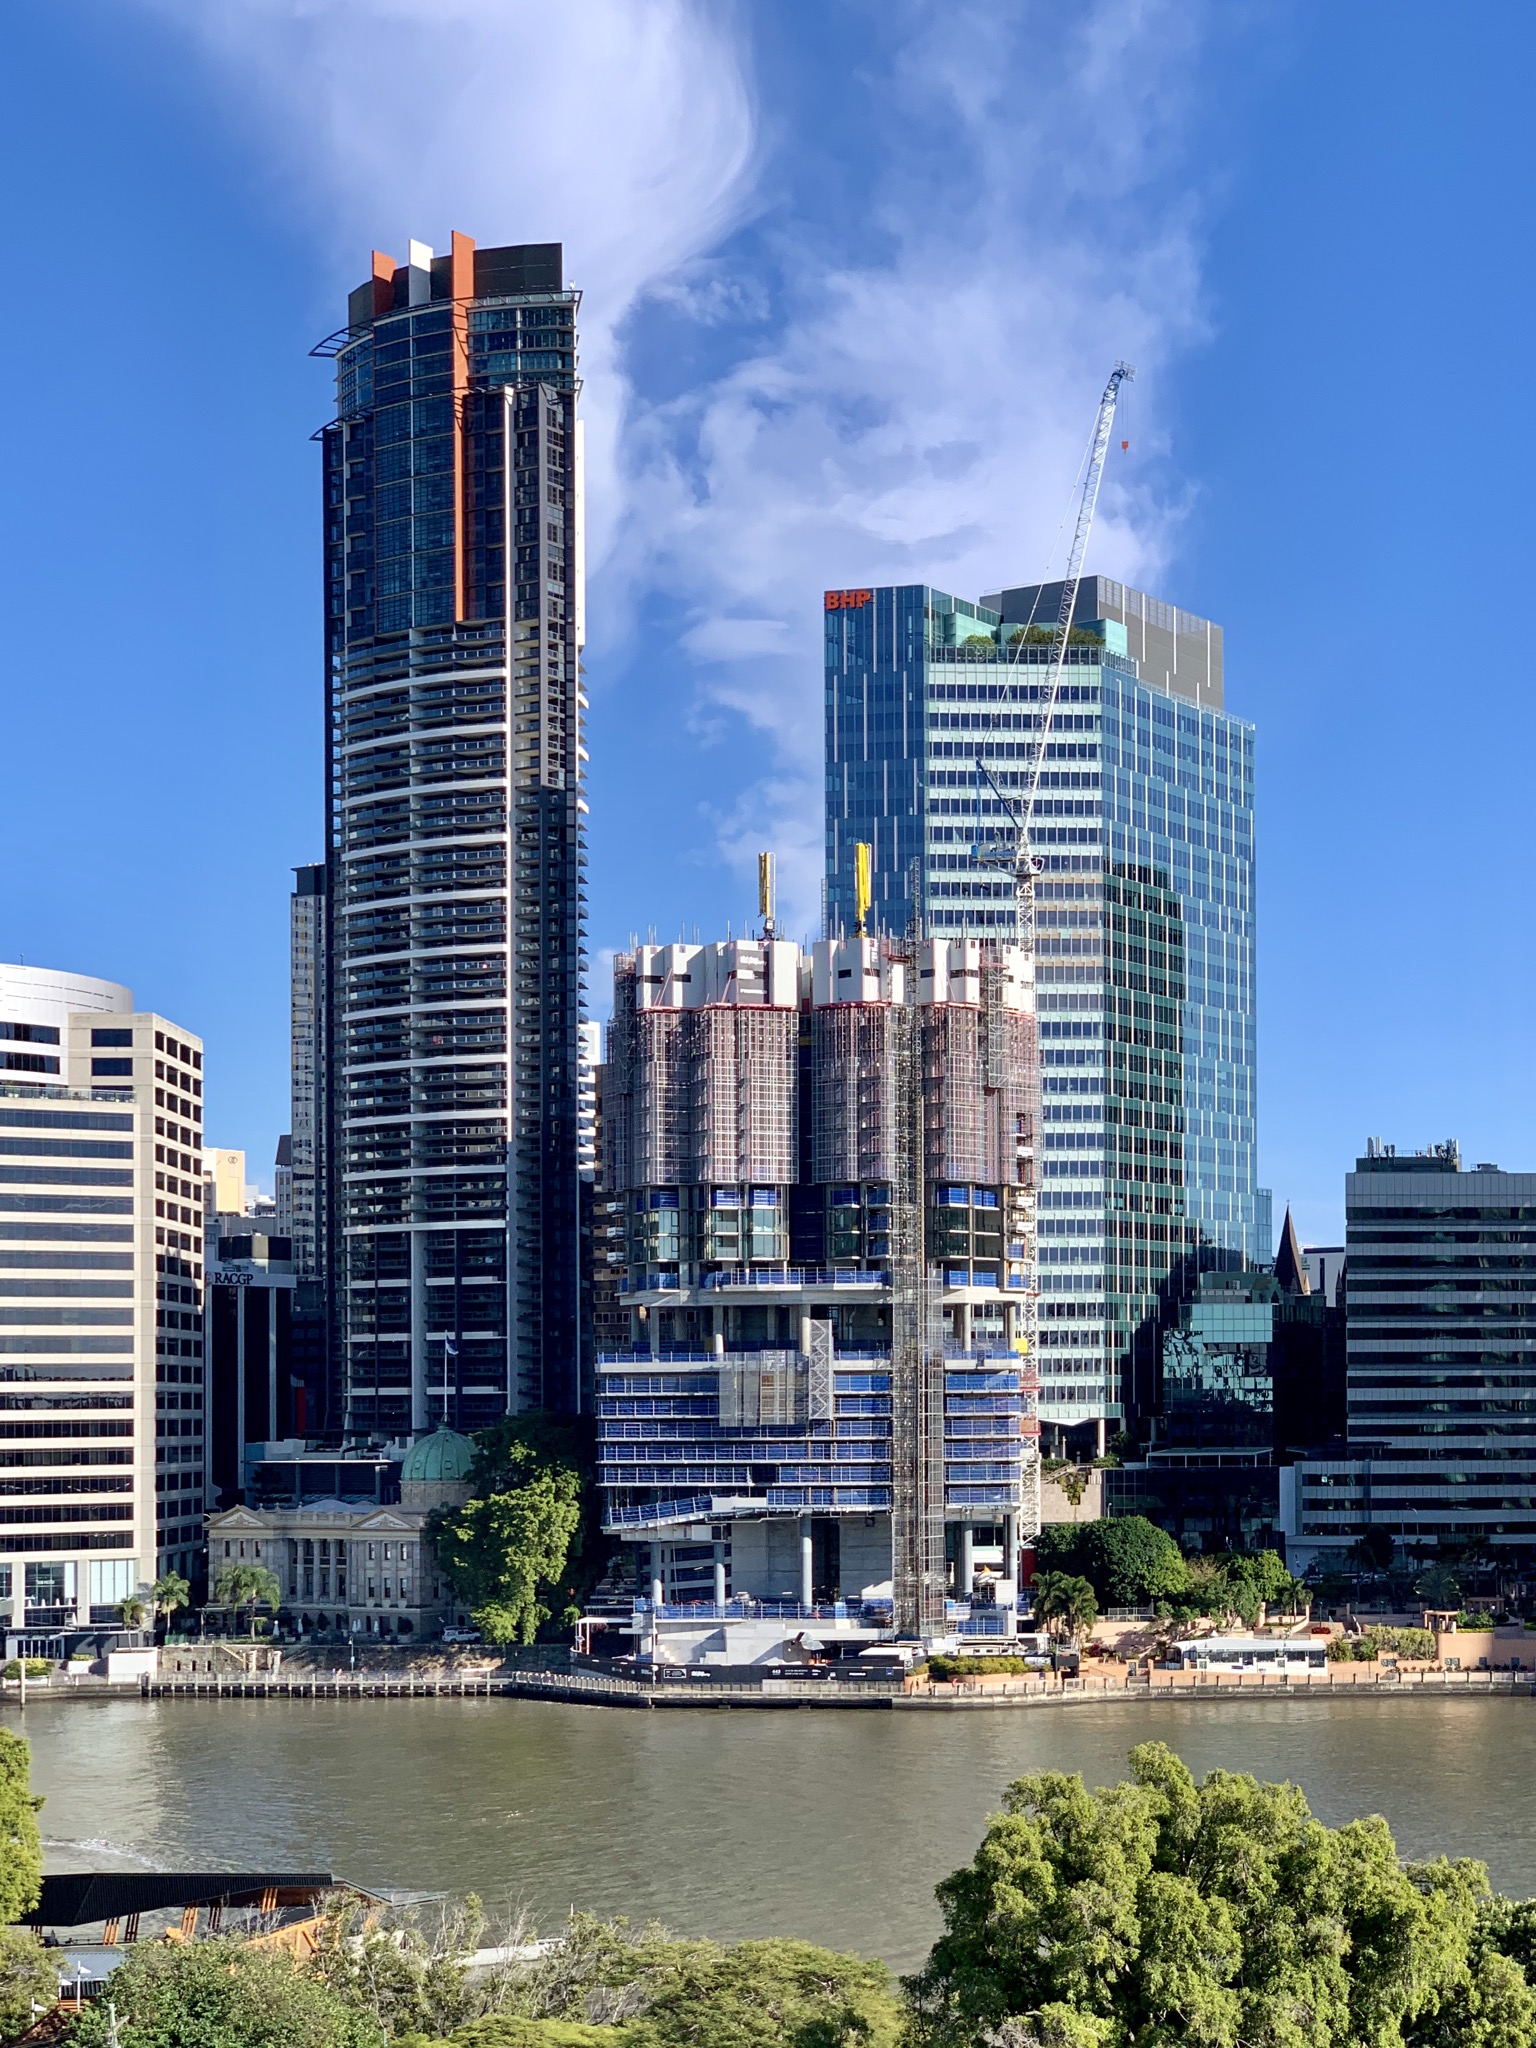 ▲ 443 Queen Street in Brisbane under construction in July 2020.